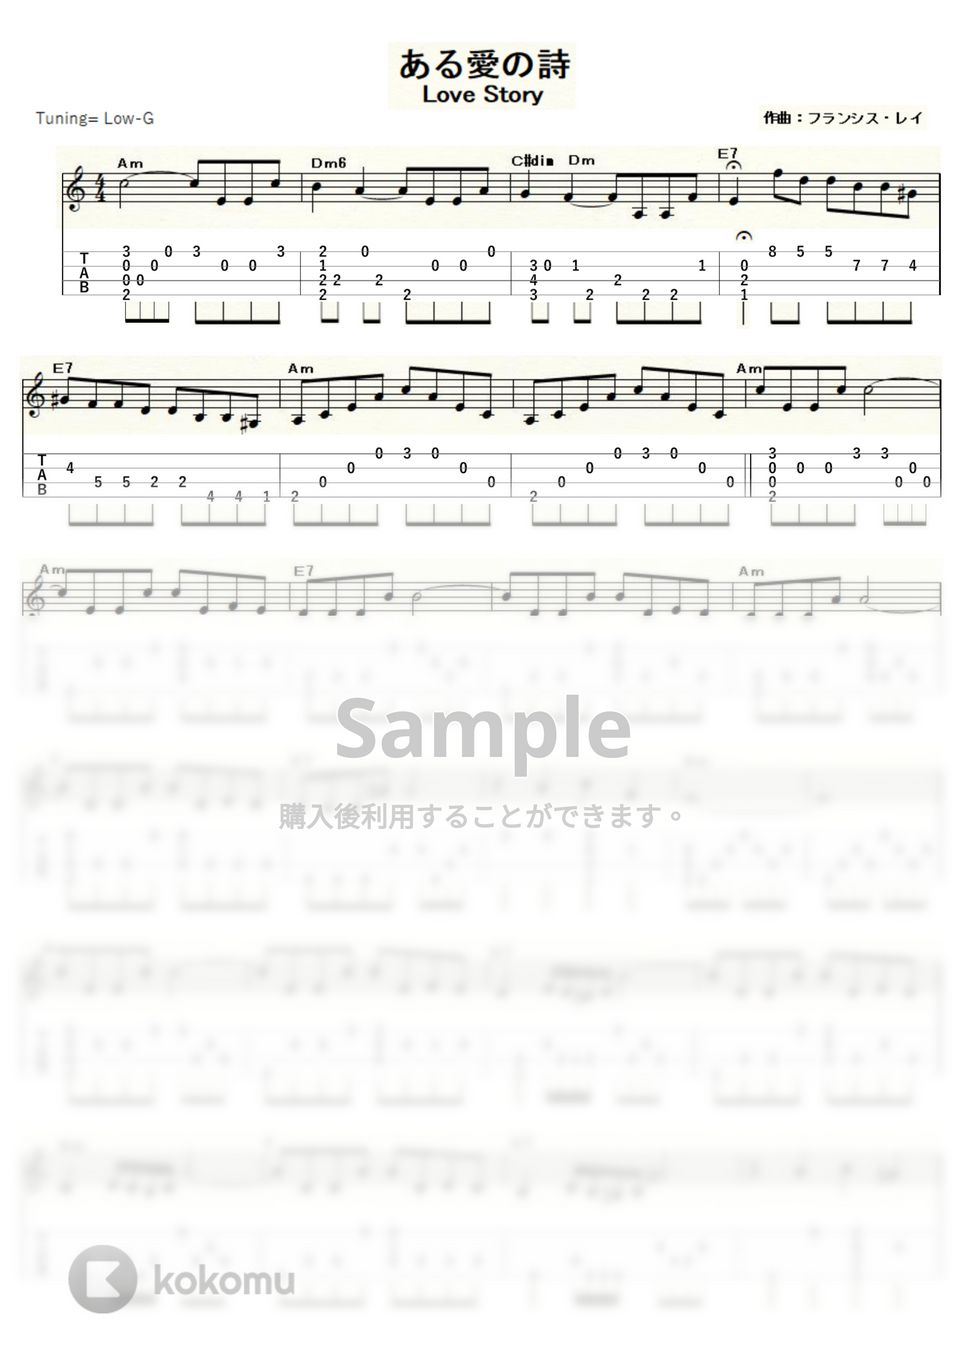 フランシス・レイ - ある愛の詩 (ｳｸﾚﾚｿﾛ/Low-G/中級) by ukulelepapa